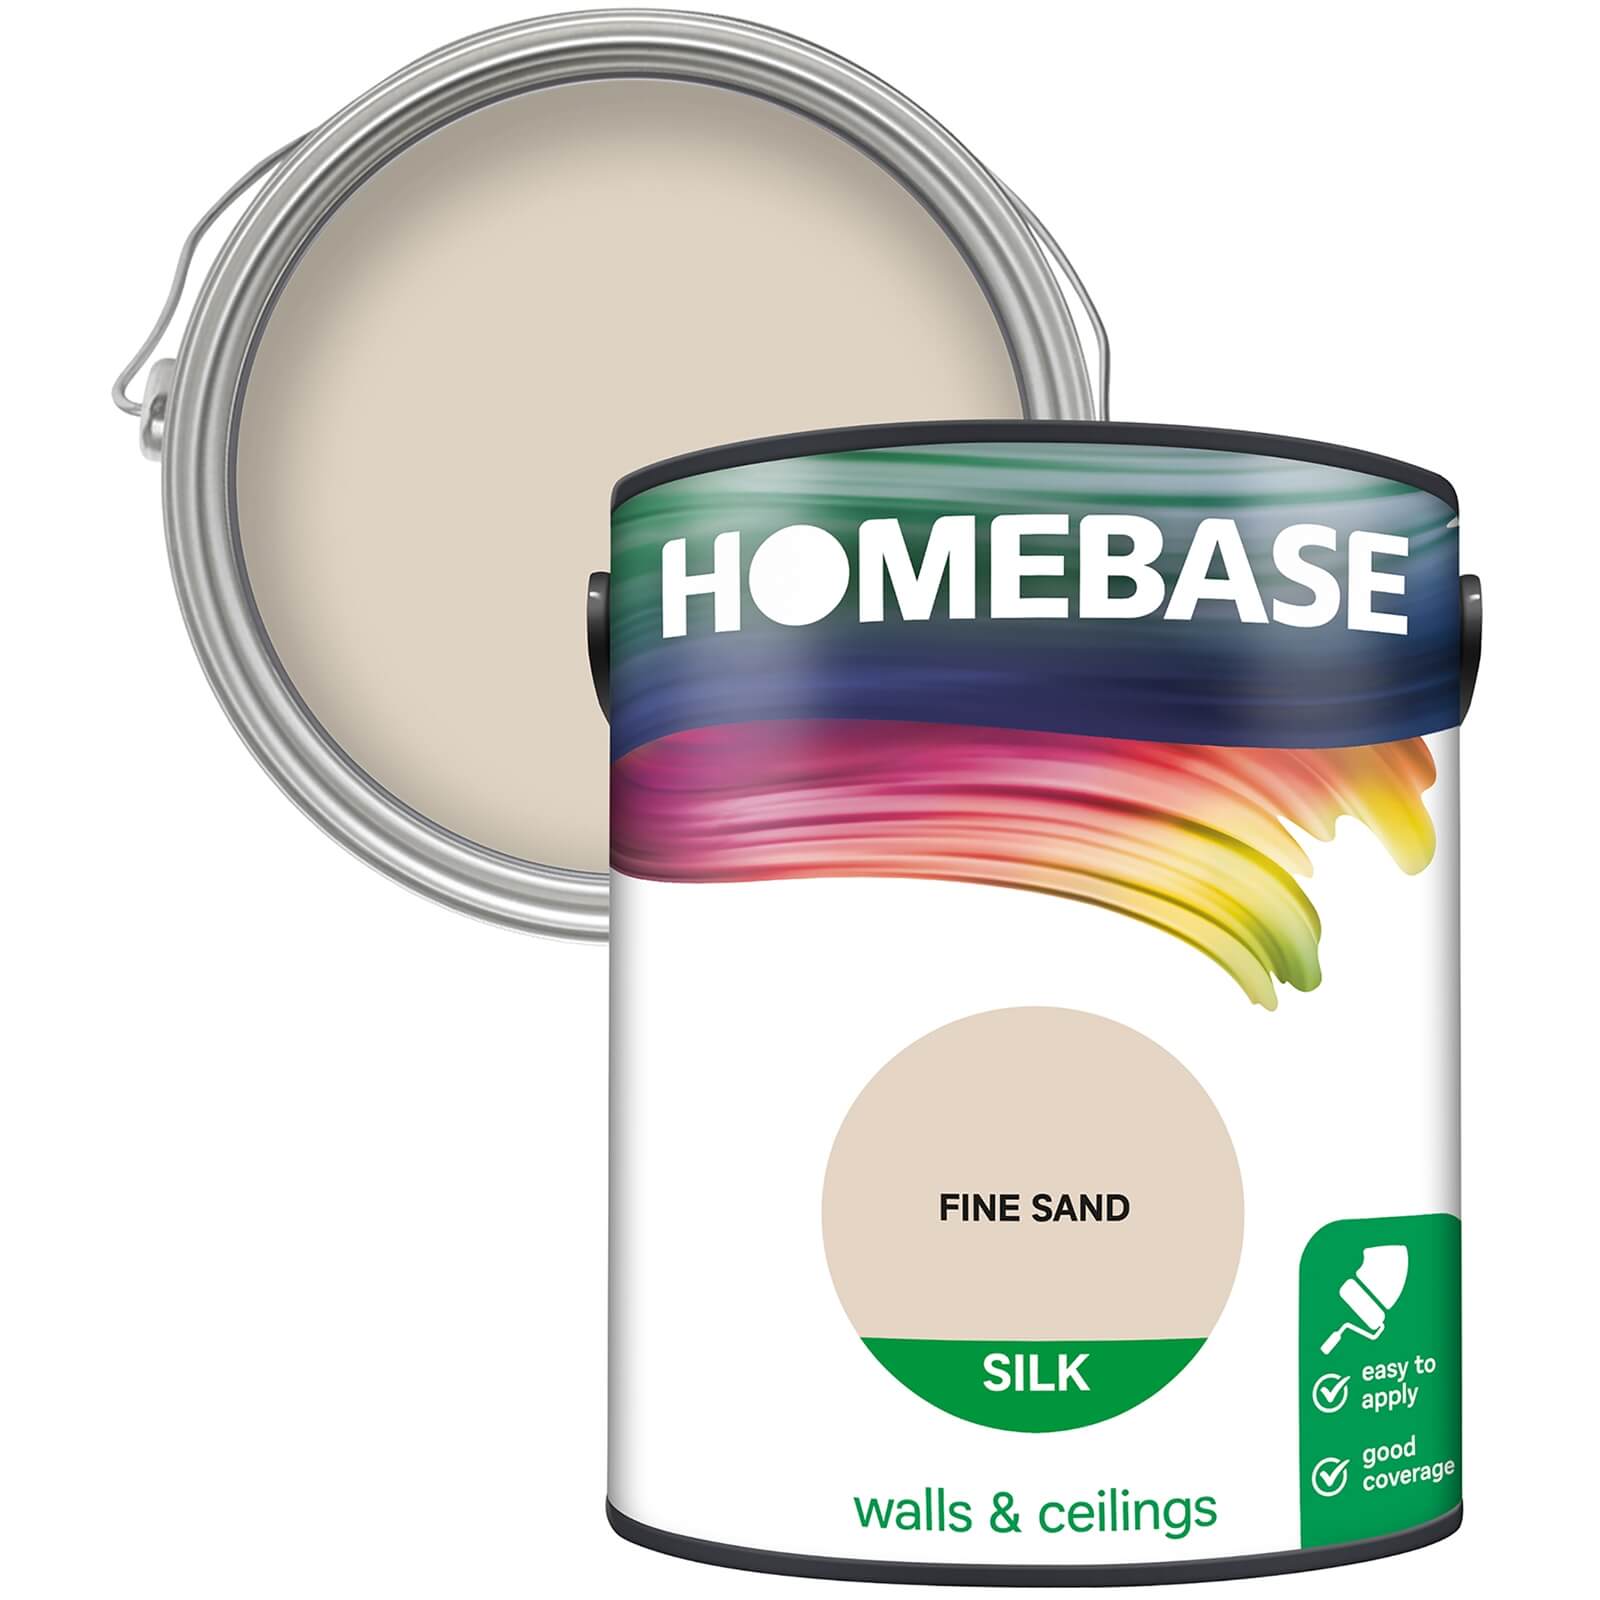 Homebase Silk Emulsion Paint Fine Sand - 5L